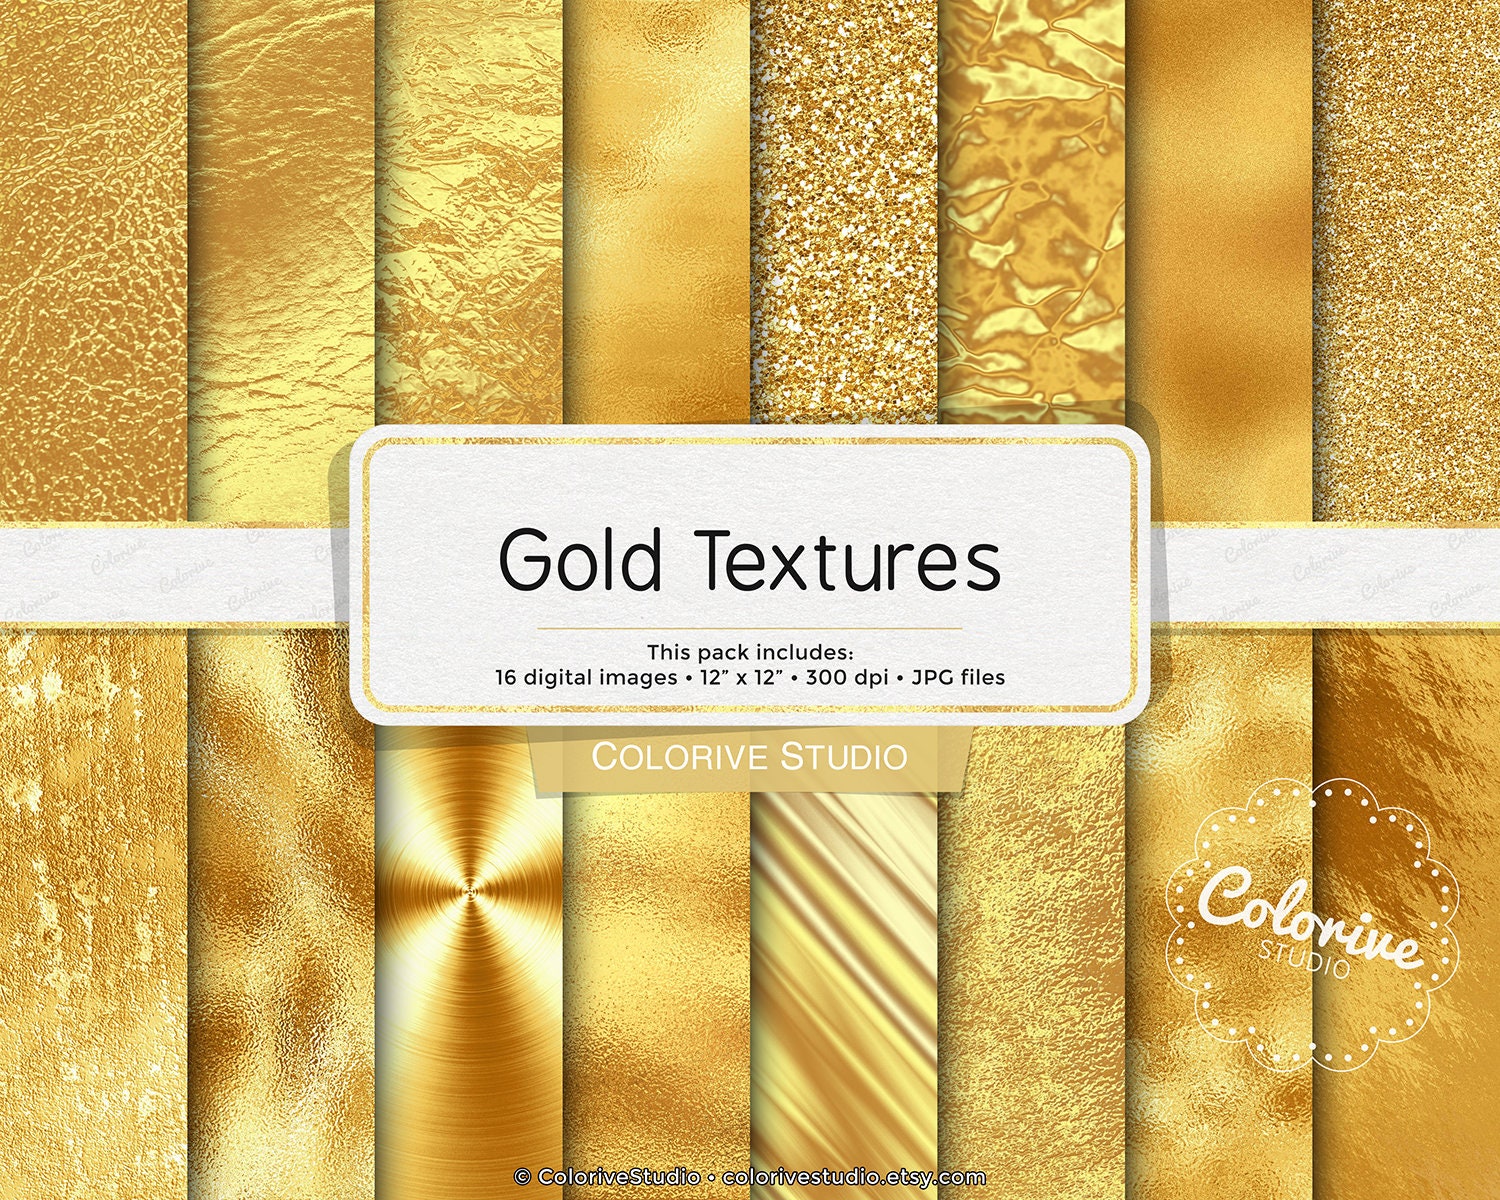 Vàng: Hãy chiêm ngưỡng hình ảnh chất lượng cao về những vật phẩm vàng đẹp mê hồn, tạo điểm nhấn cho không gian sống của bạn.